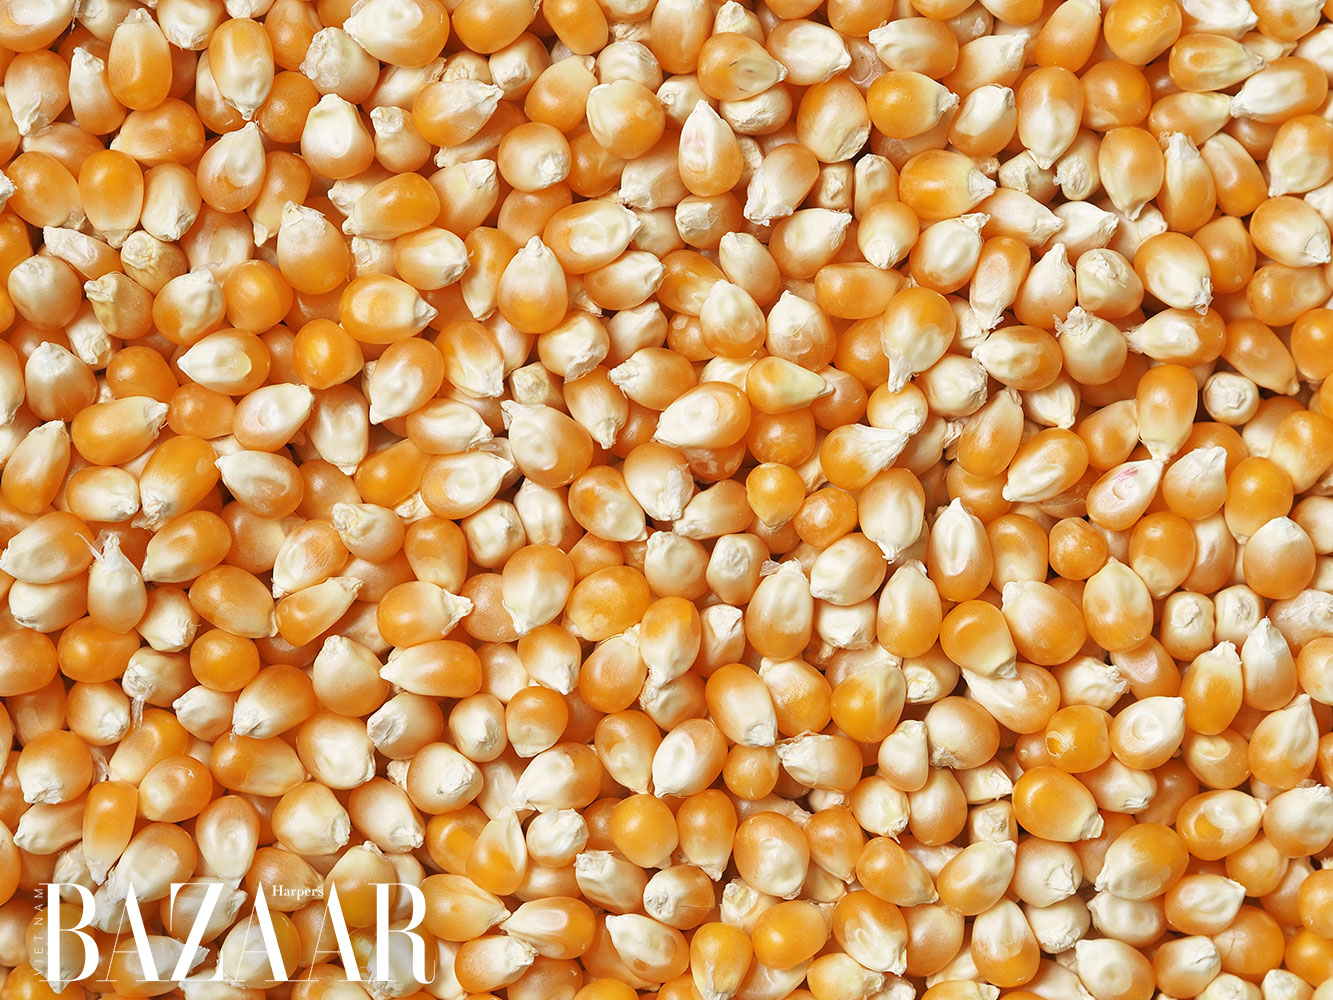 bap ngo corn lukasz rawa NL02eAwtkmM unsplash - Cô gái 9X chế tạo hạt xốp tự hủy từ ngô: “Người ăn cũng được luôn!”